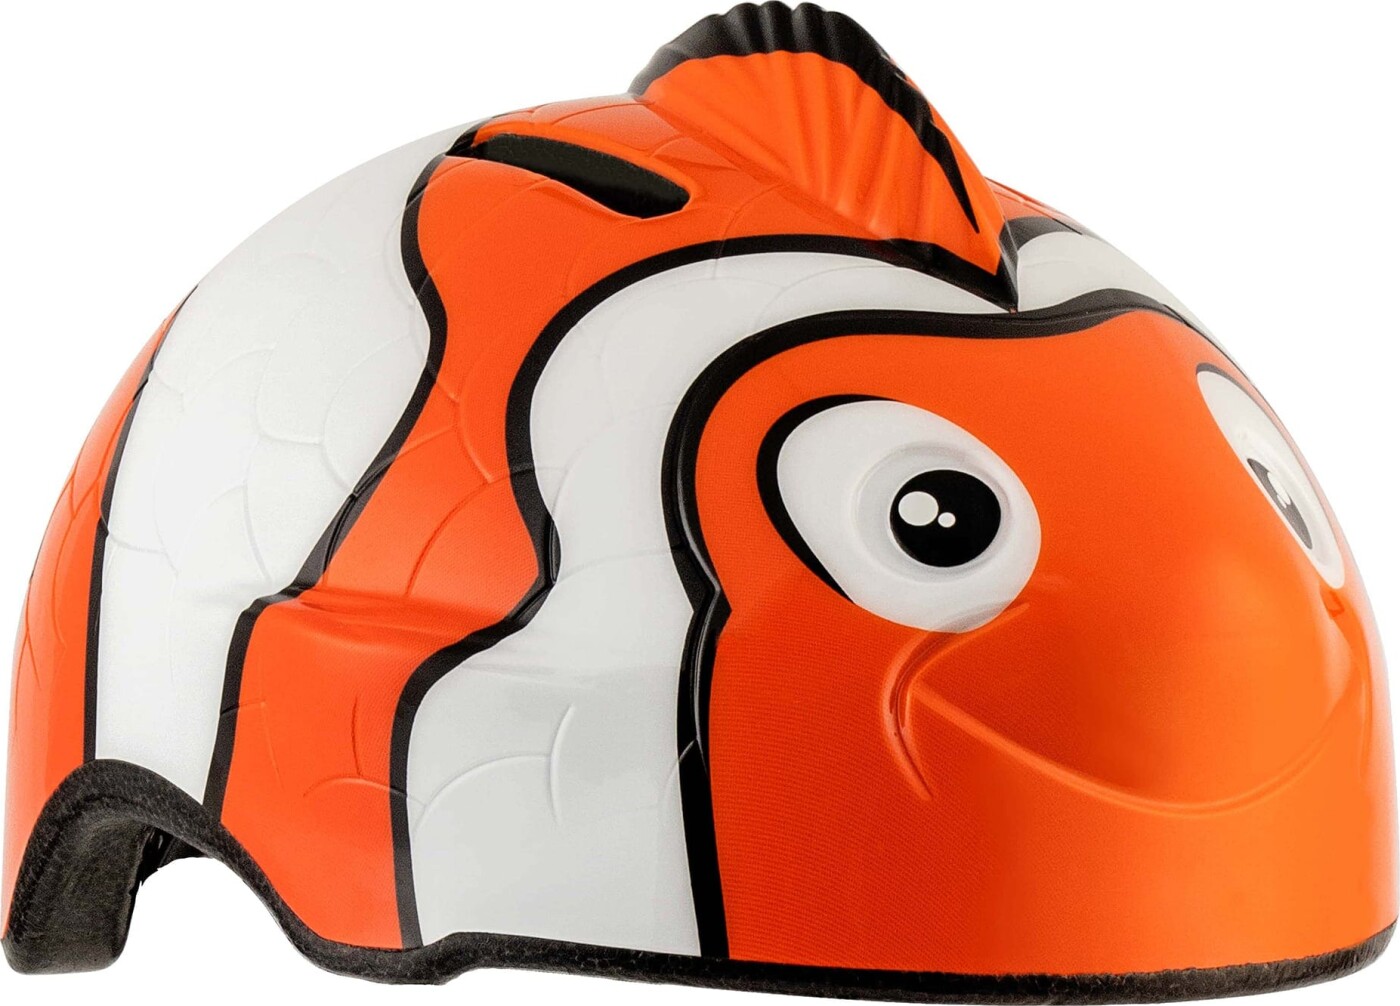 Se Crazy Safety orange klovnefiskcykelhjelm til børn. Testet, sikkerhedsgodkendt og EN1078 certificeret. hos Gucca.dk